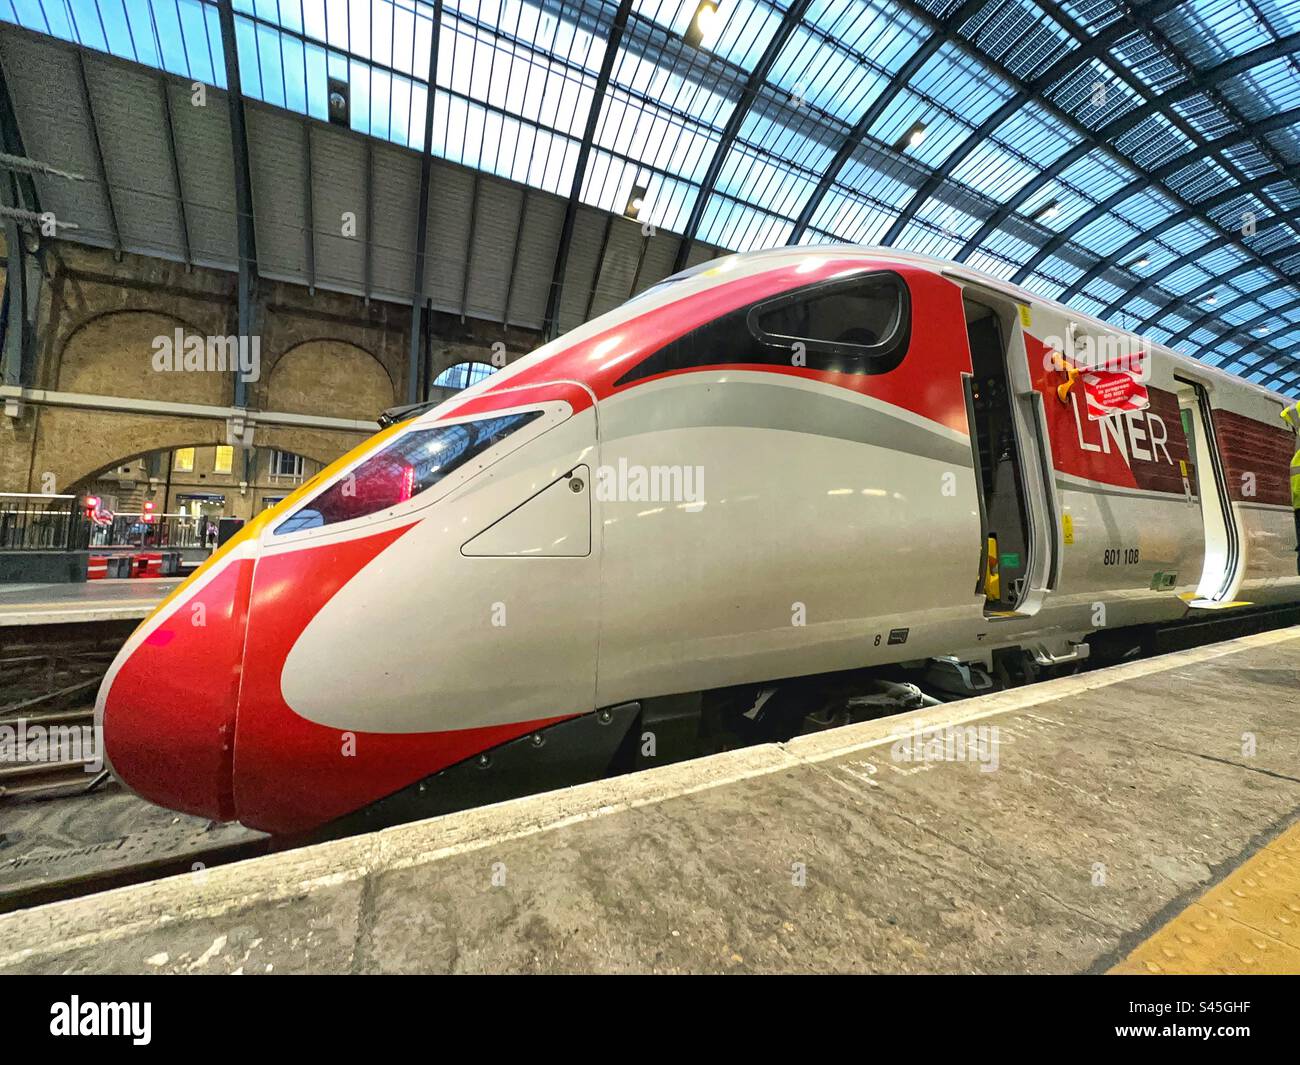 Tren de alta velocidad operado por LNER en la estación de tren de King's Cross en Londres Foto de stock